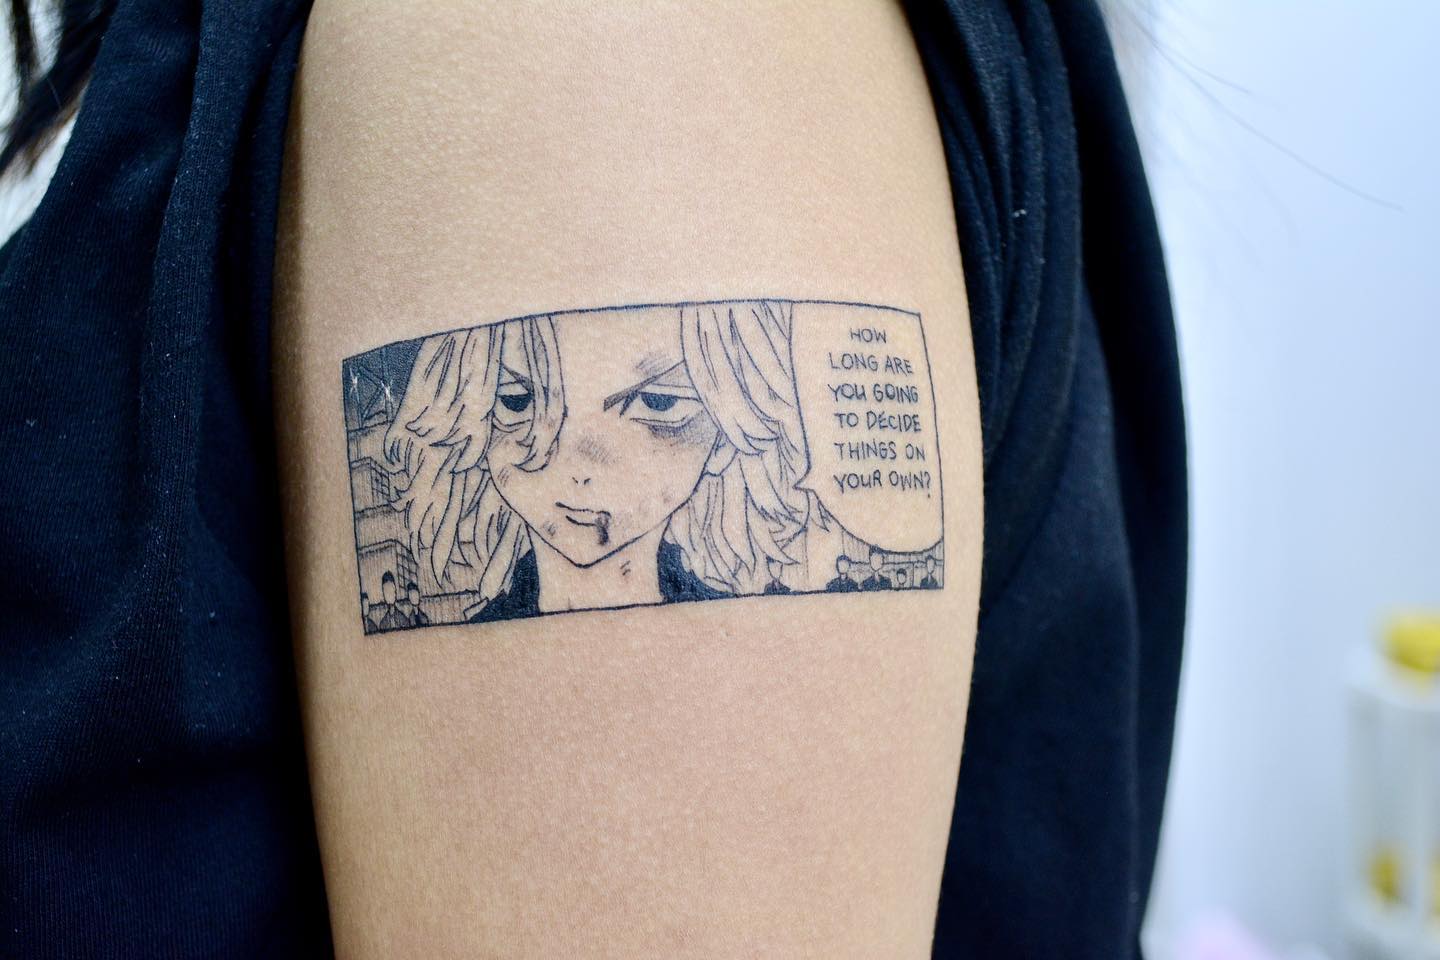 Tokyo revengers inspired tattoos